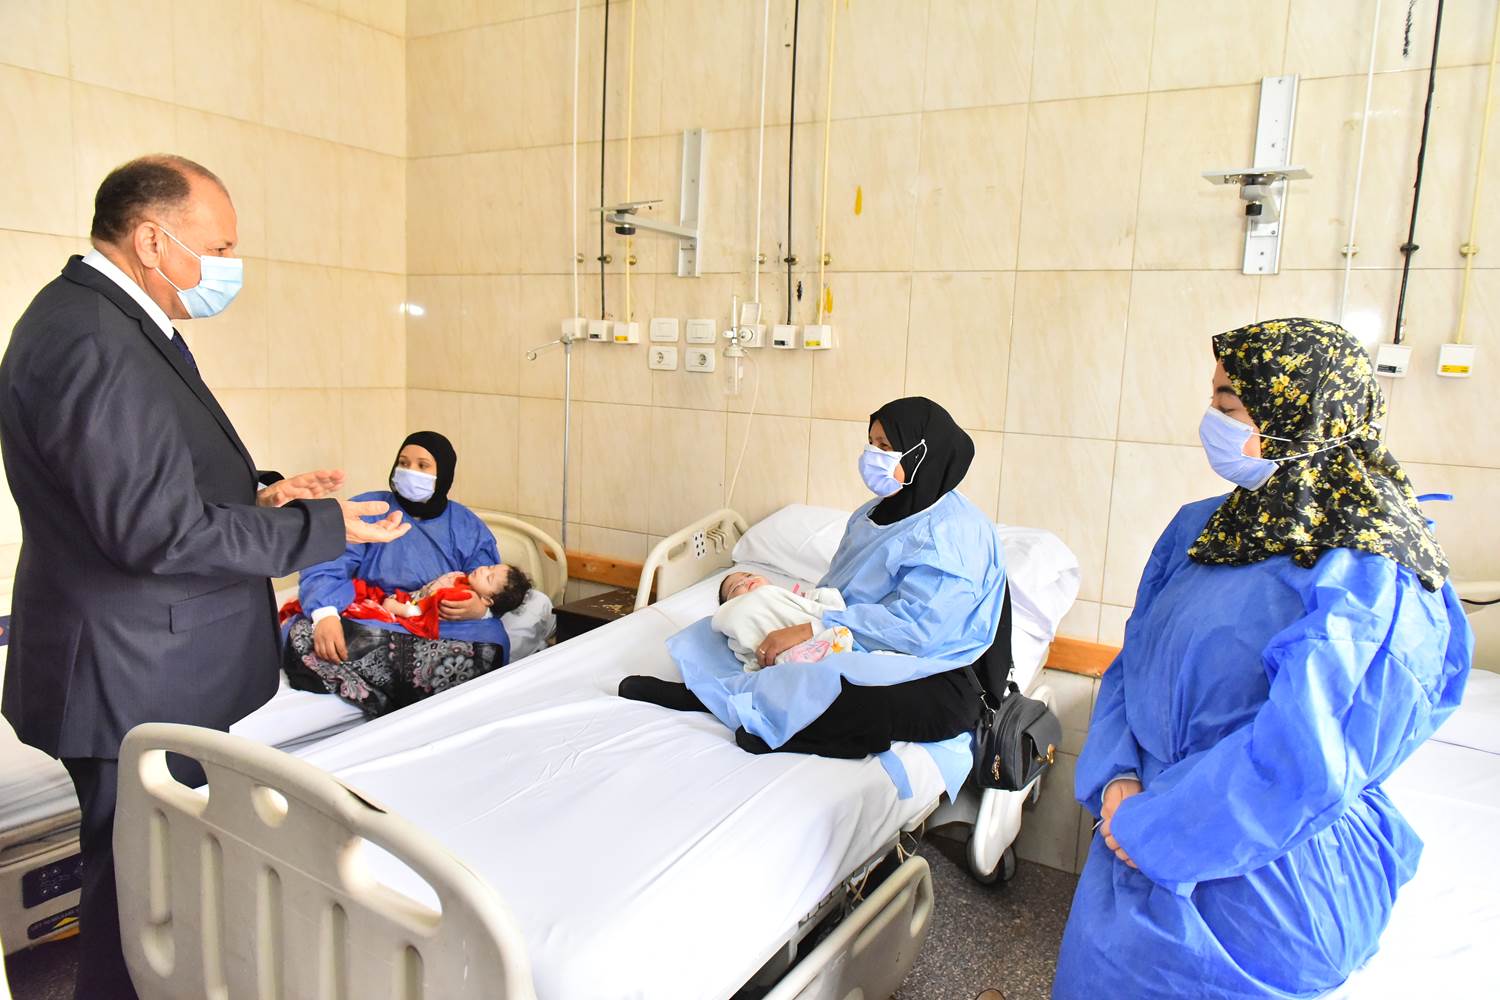 محافظ أسيوط يزور مستشفيات الإيمان العام والشاملة لتهنئة المرضى بالعيد  (3)